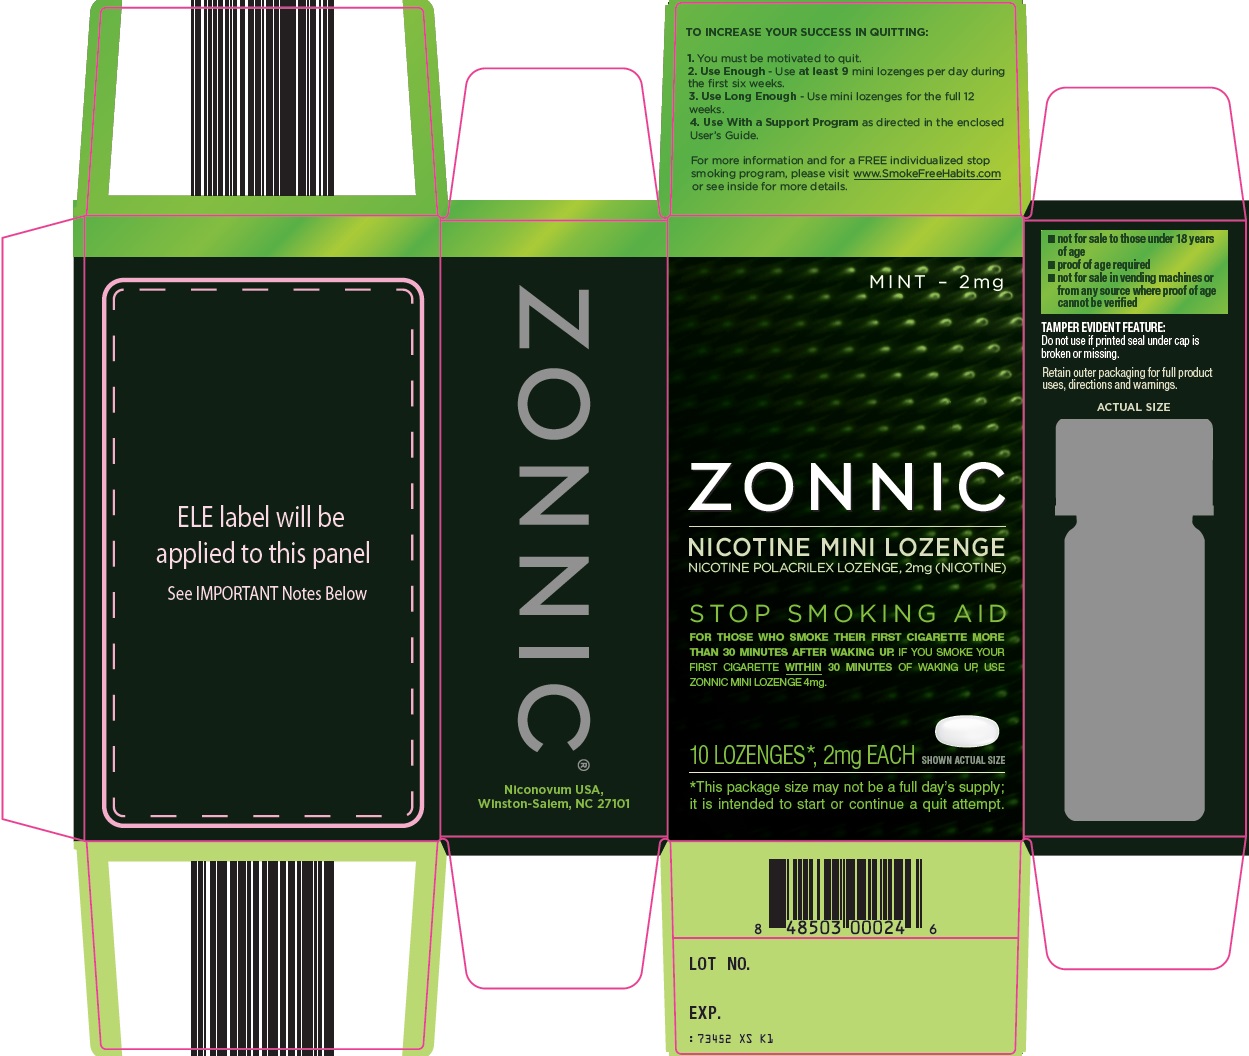 Zonnic Nicotine Mini Lozenge image 1